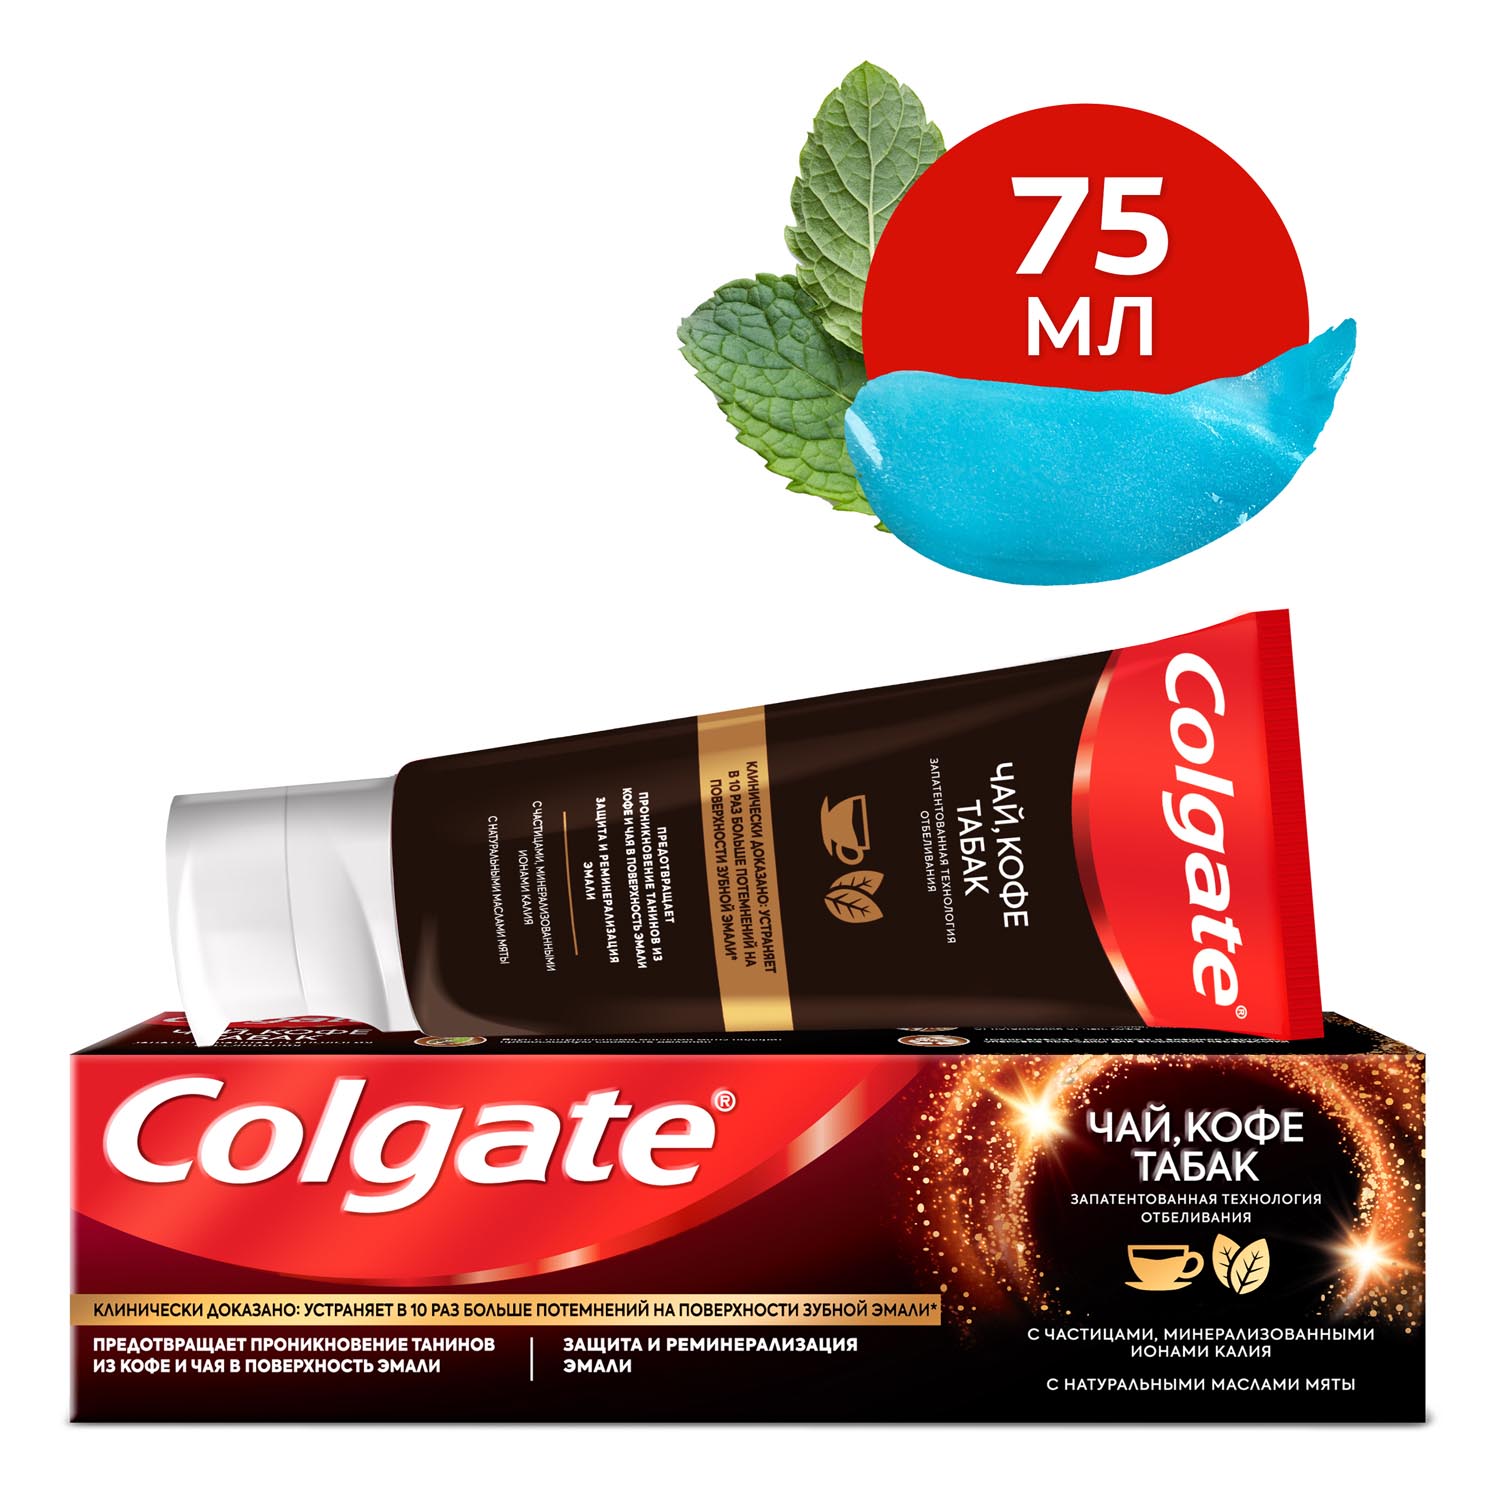 Зубная паста Colgate чай, кофе, табак отбеливающая с натуральными маслами мяты, 75 мл зубная паста colgate бережное отбеливание 50 мл